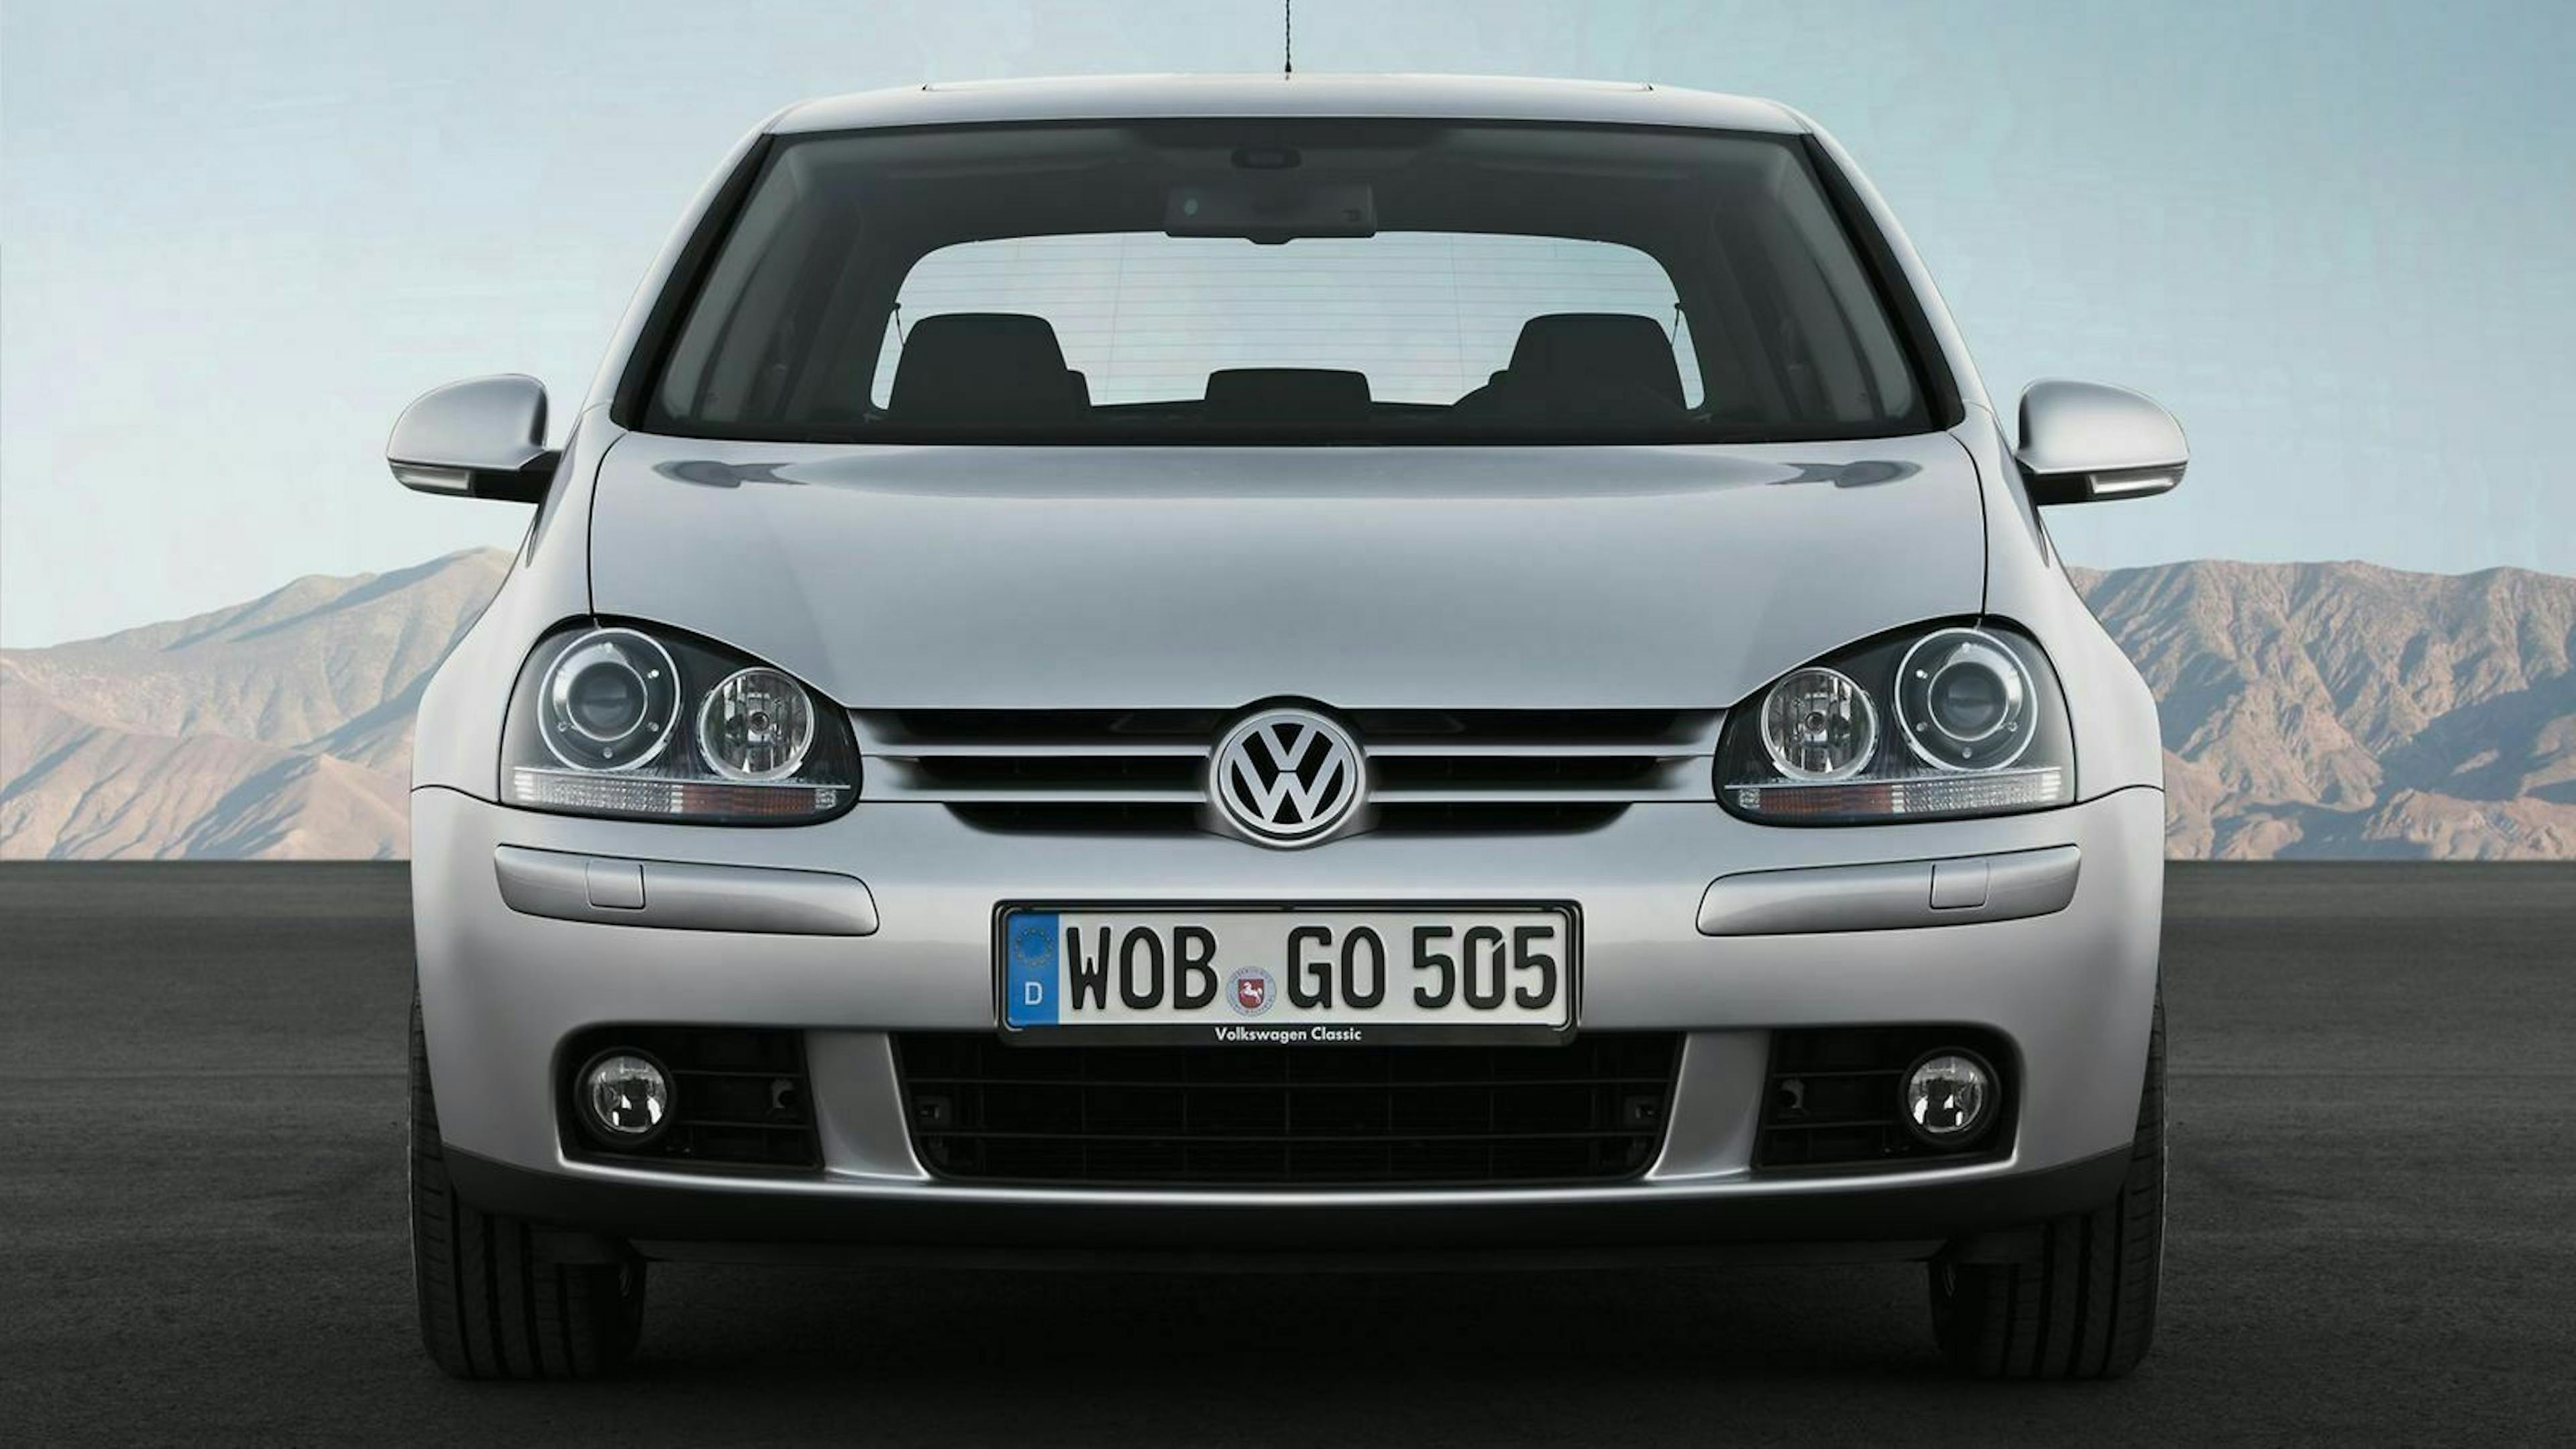 VW Golf 5 in der Frontansicht, stehend